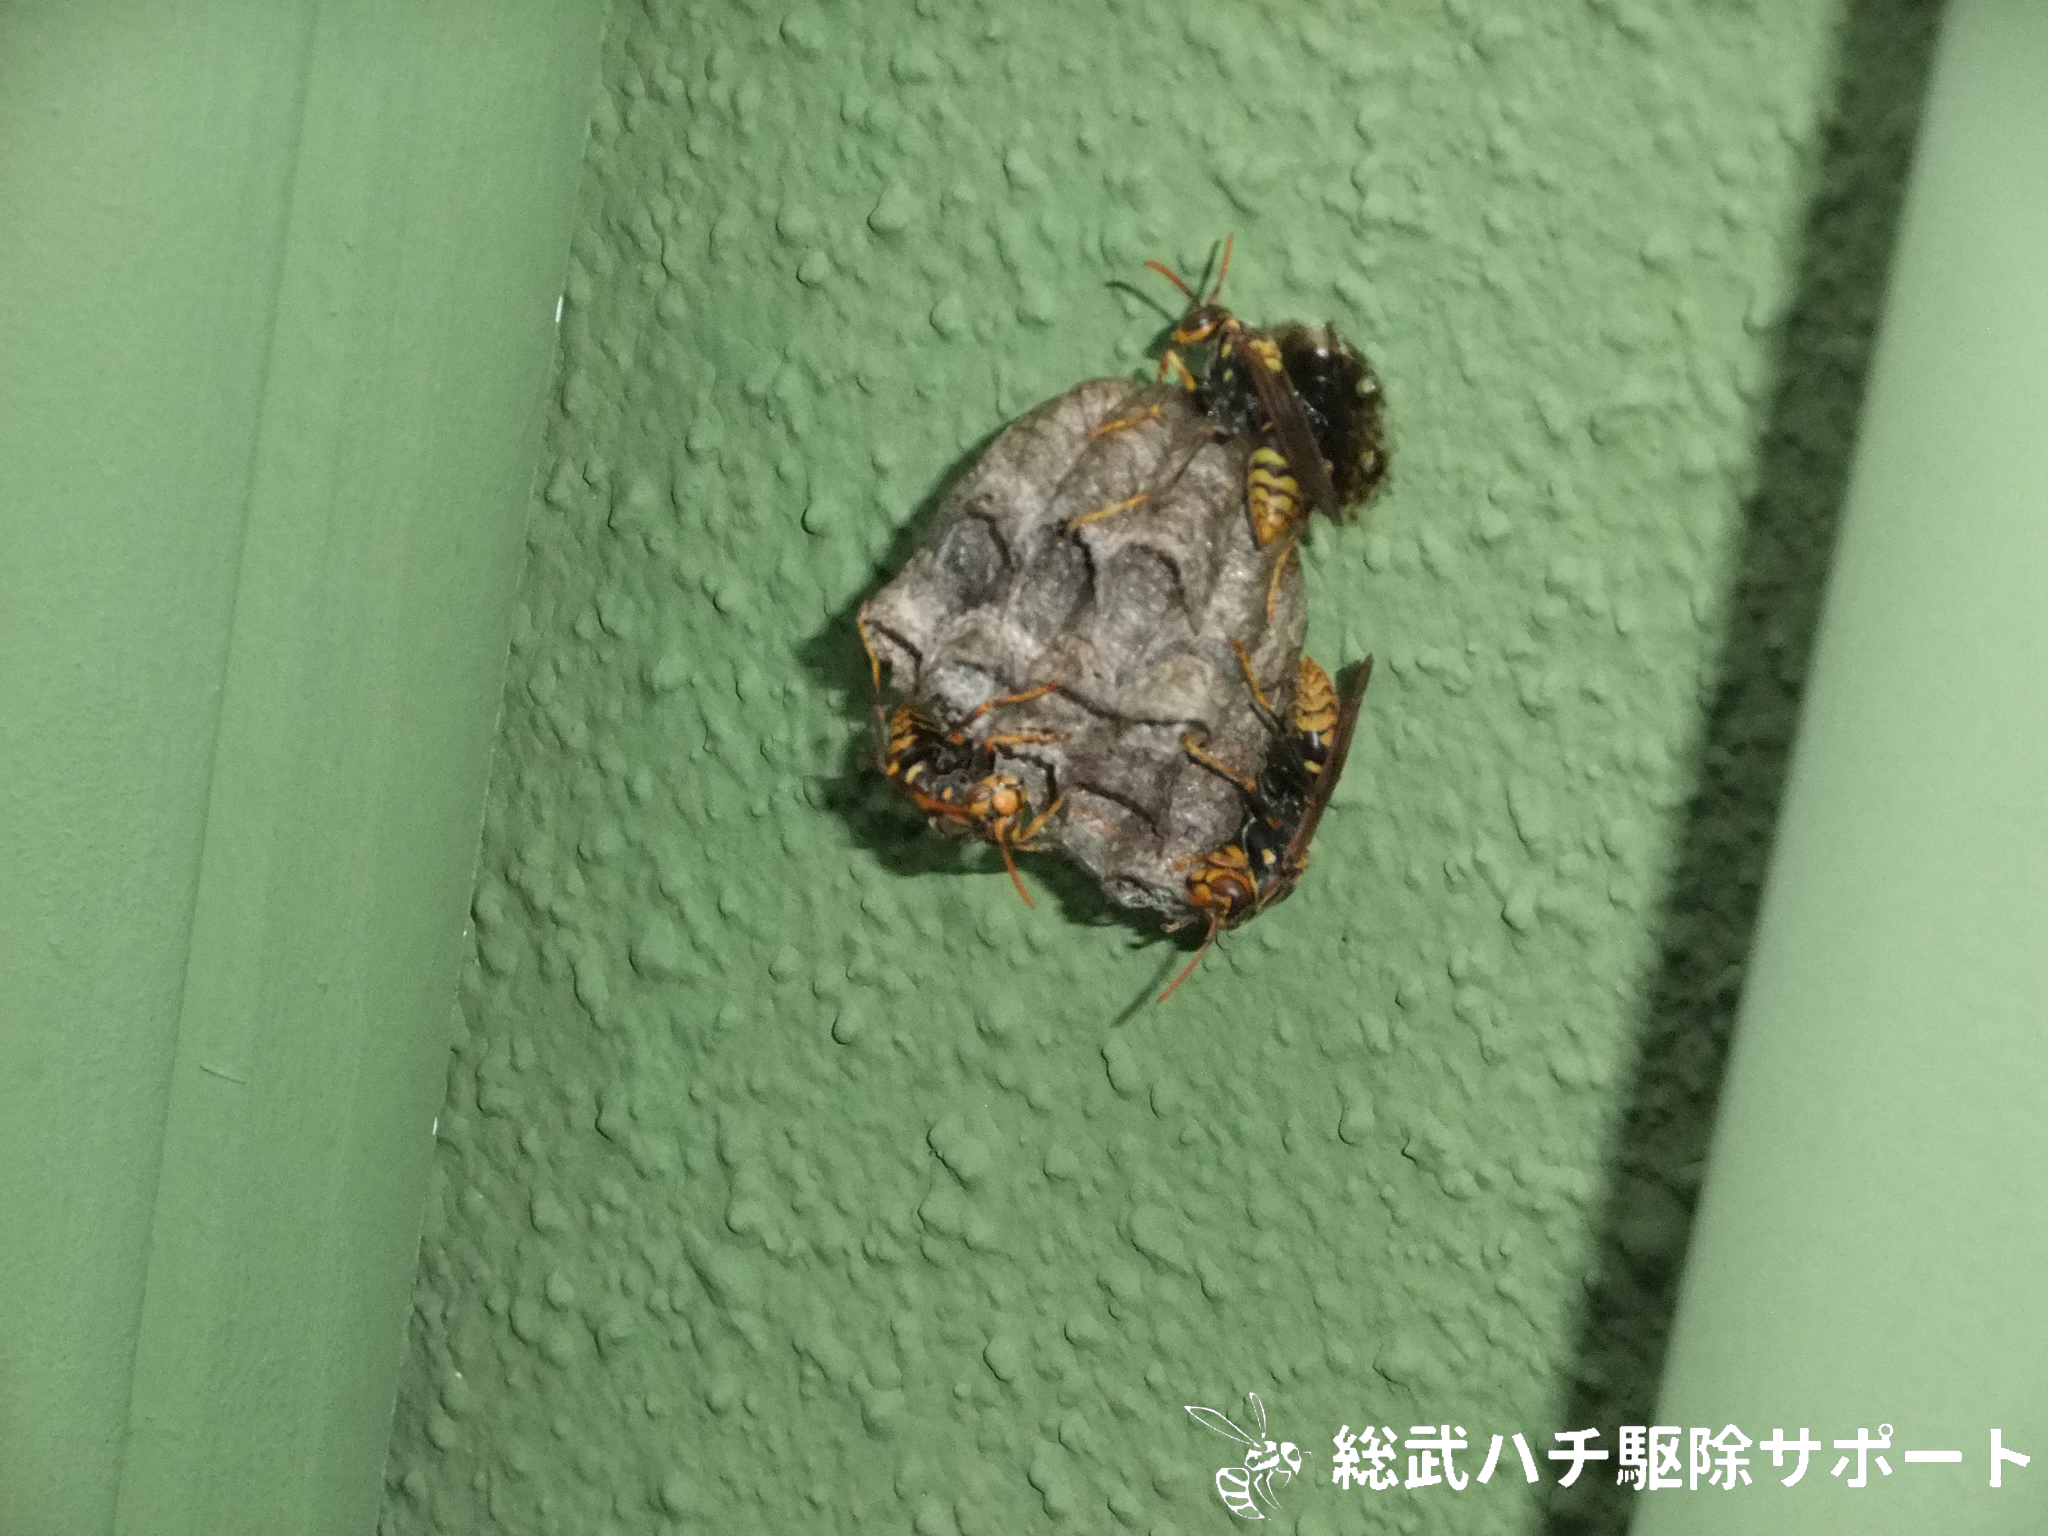 海浜幕張でマンションのベランダの壁にできたアシナガバチの巣を駆除